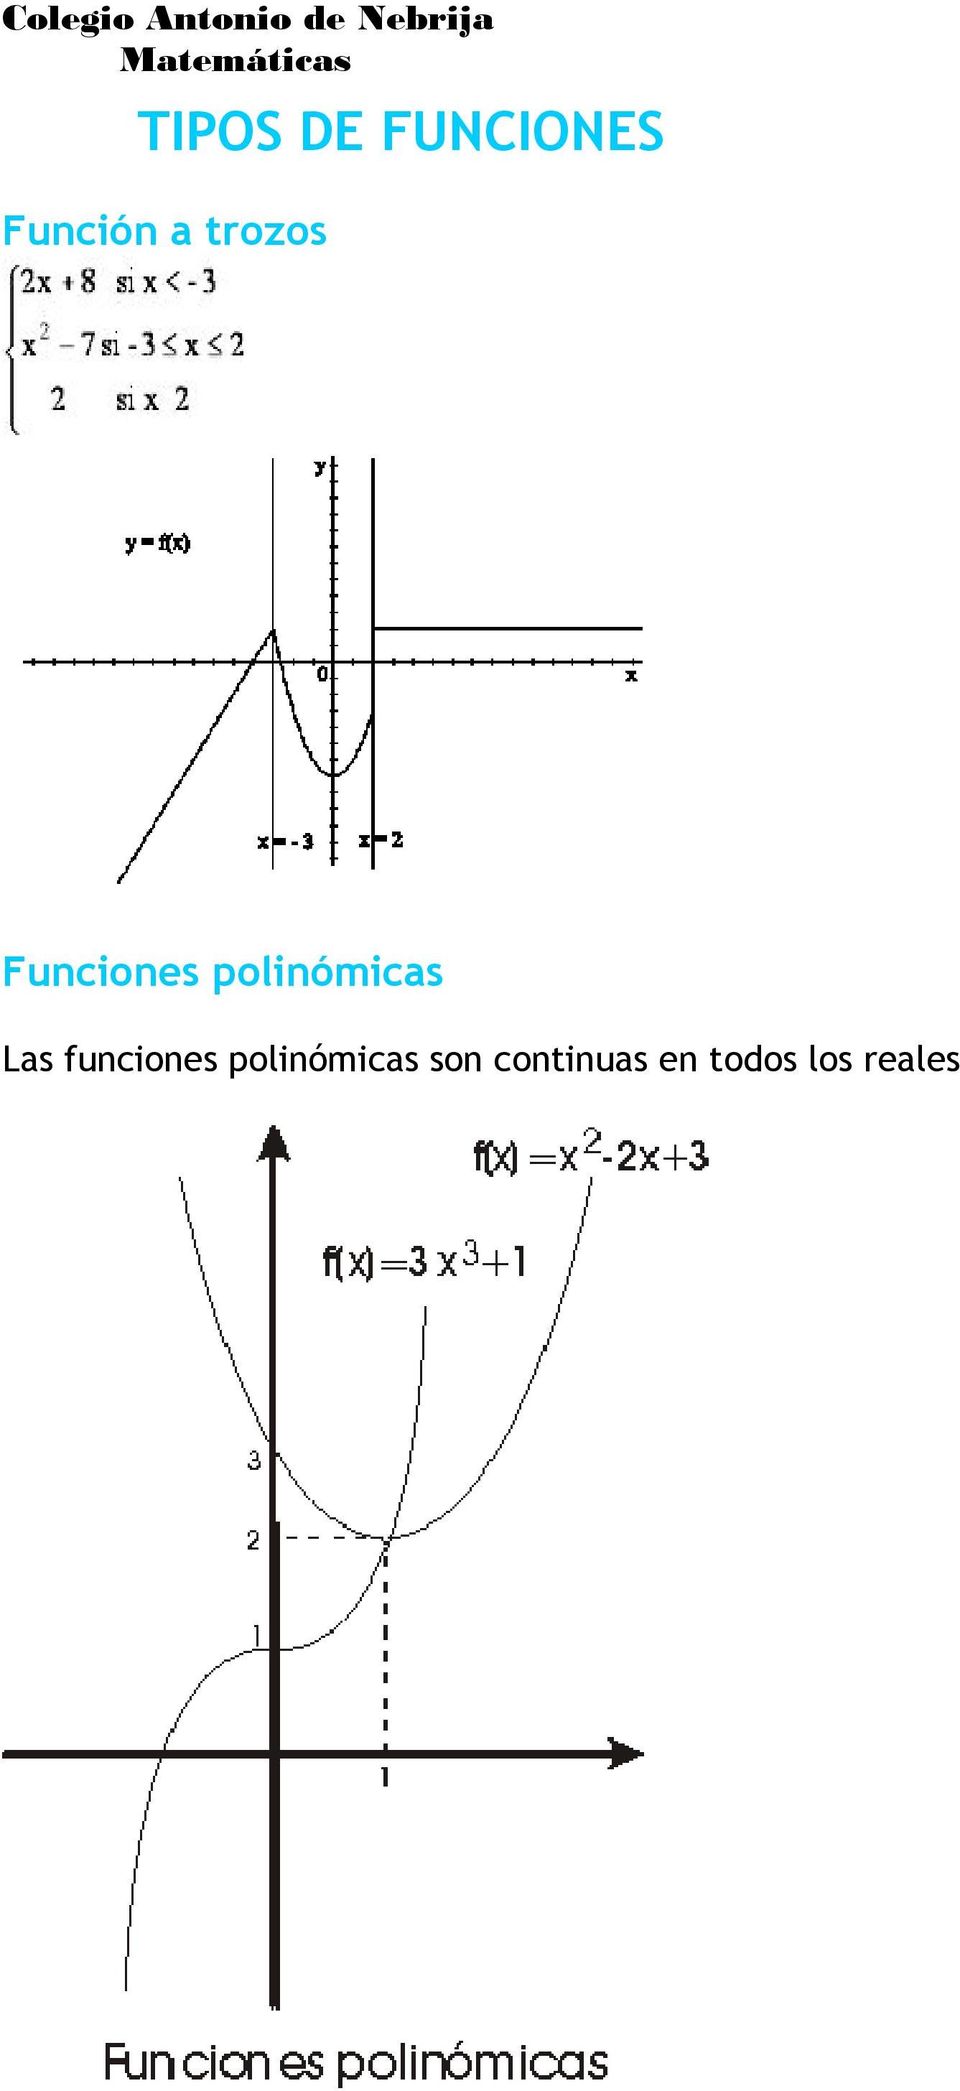 Las funciones polinómicas son